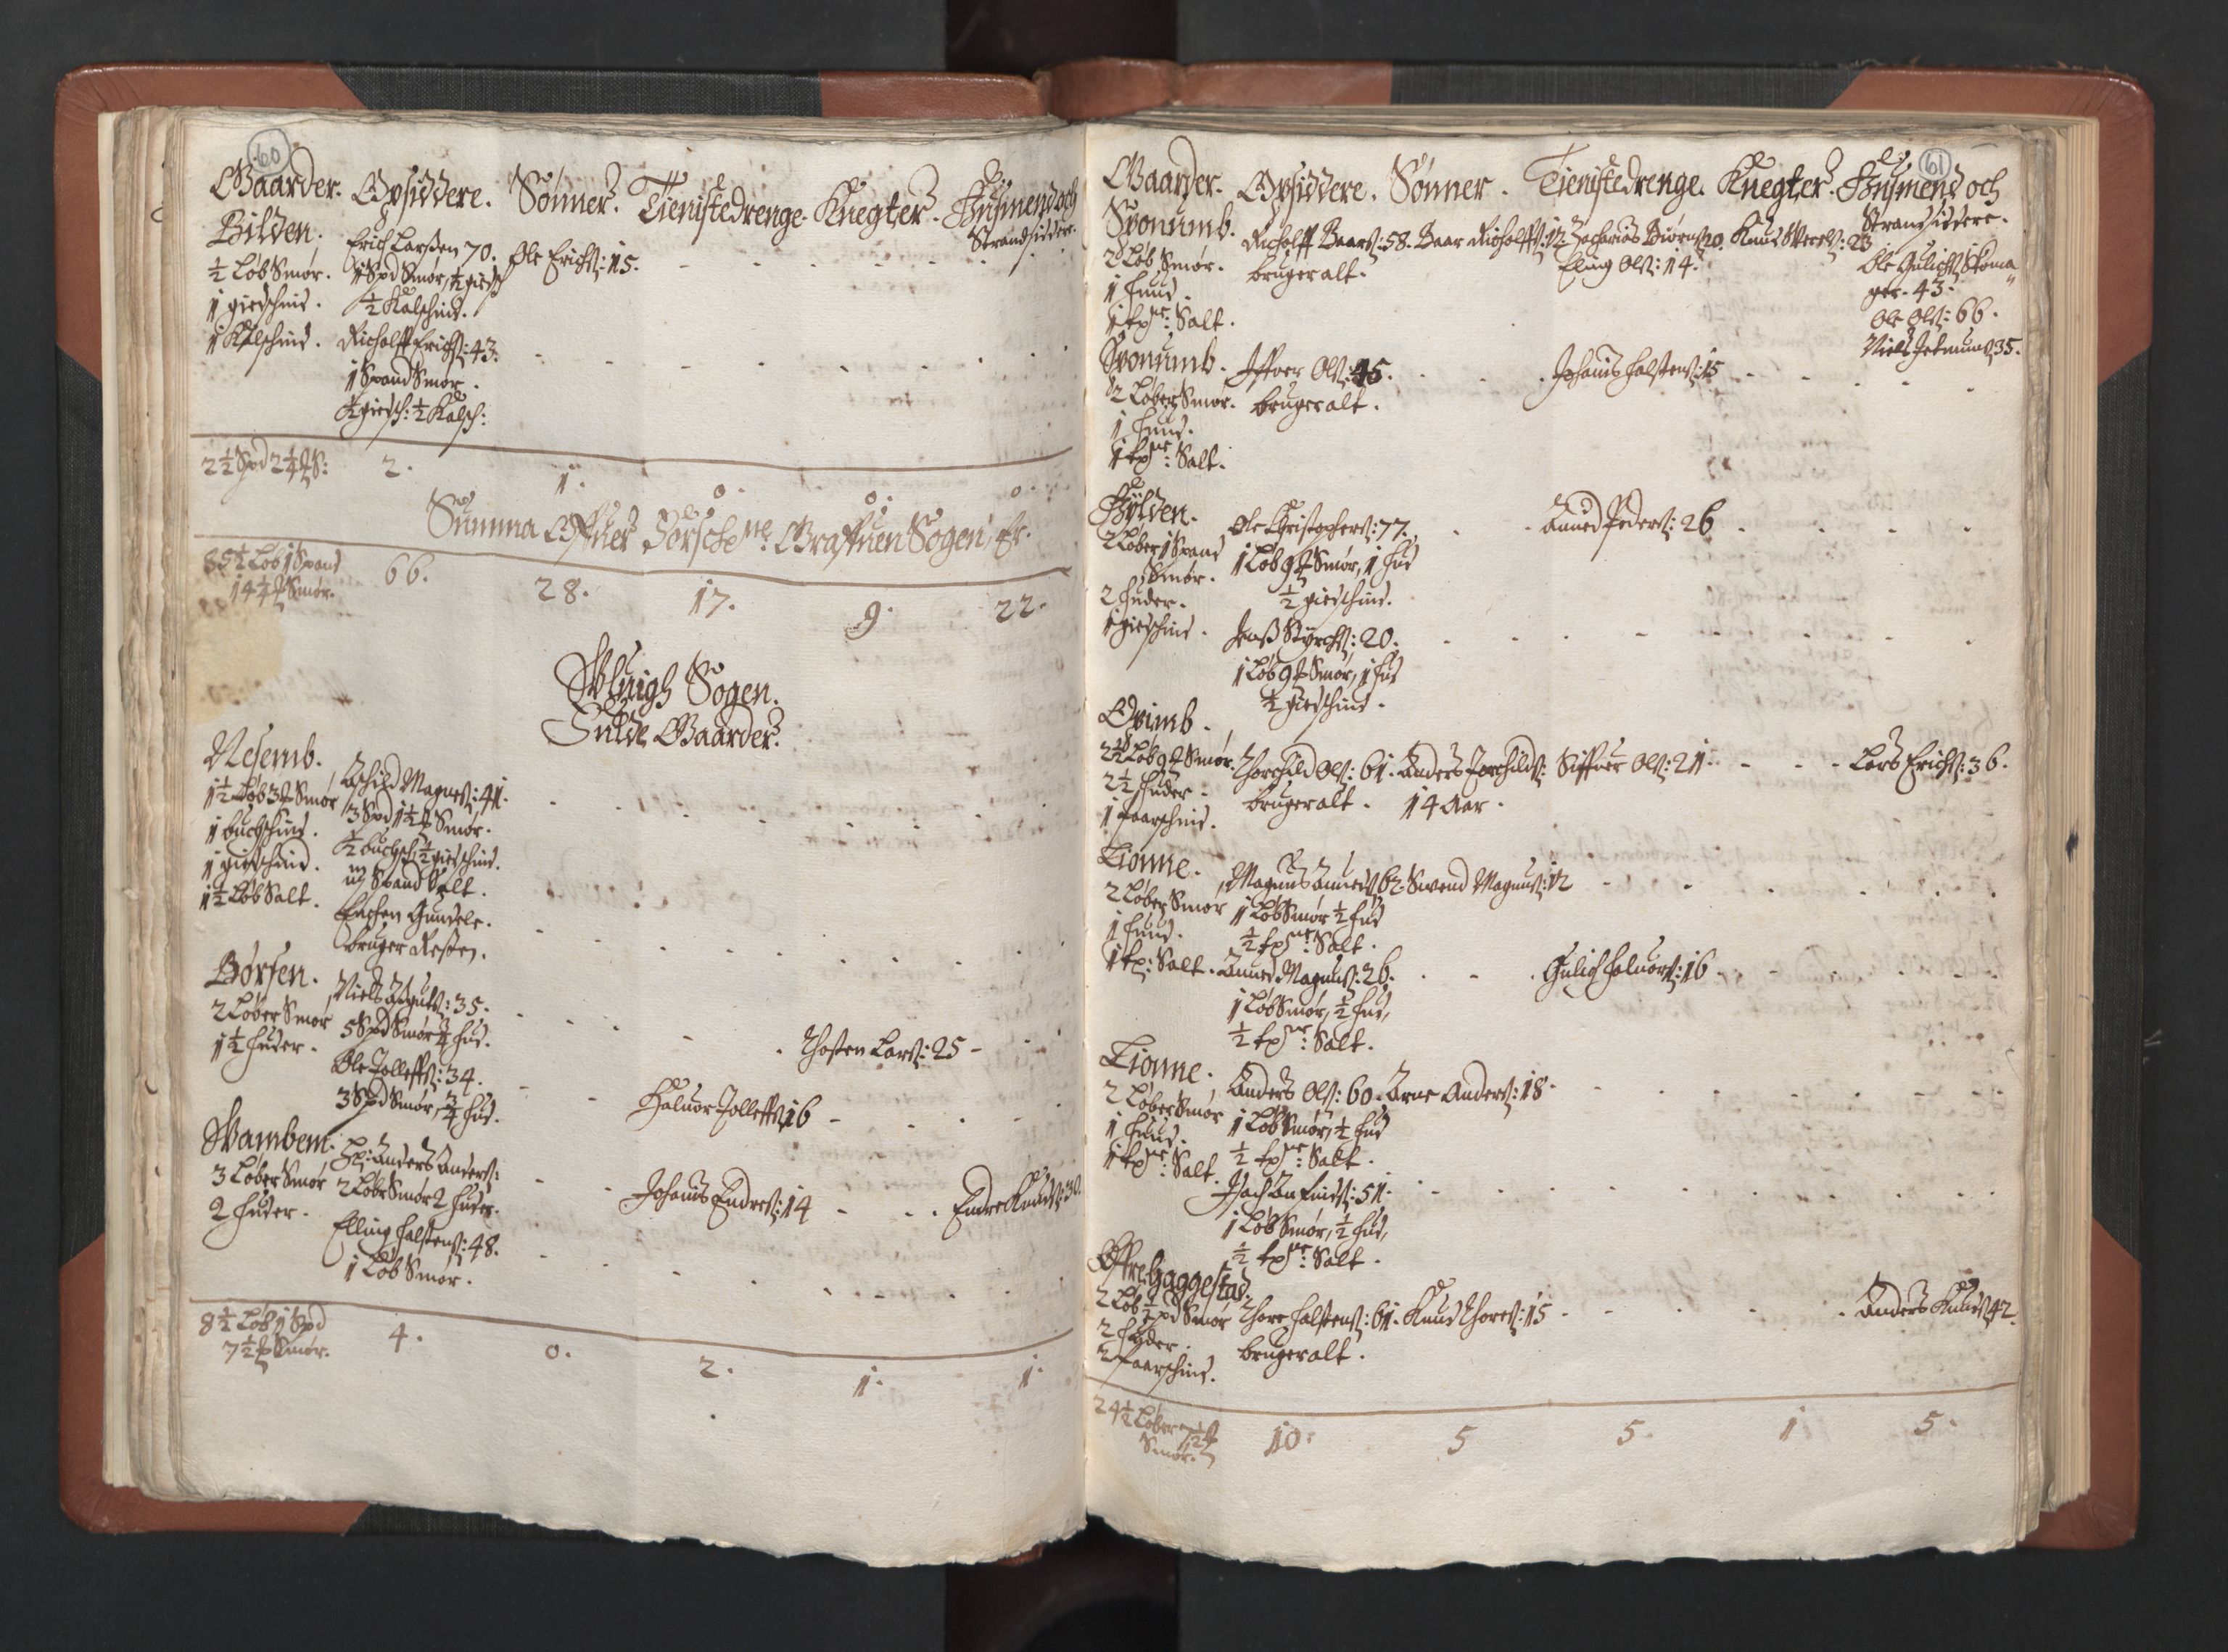 RA, Bailiff's Census 1664-1666, no. 14: Hardanger len, Ytre Sogn fogderi and Indre Sogn fogderi, 1664-1665, p. 60-61